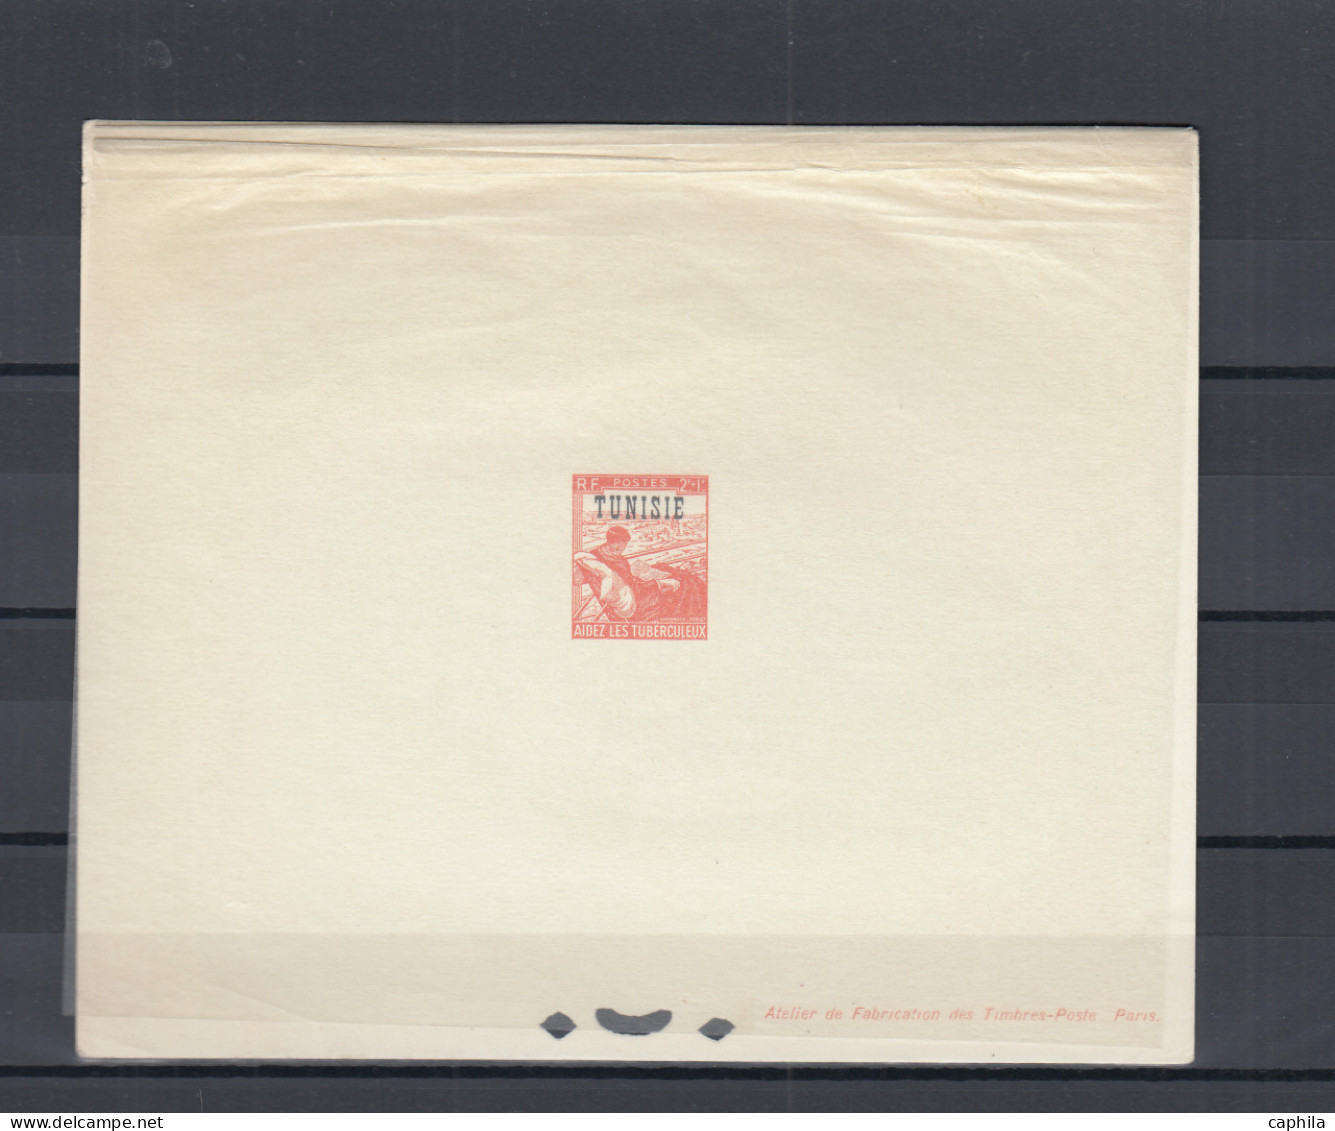 - TUNISIE, 1954/1959, XX, X, majorité XX, ensemble de 424 ND et 43 EPL, en album Lindner